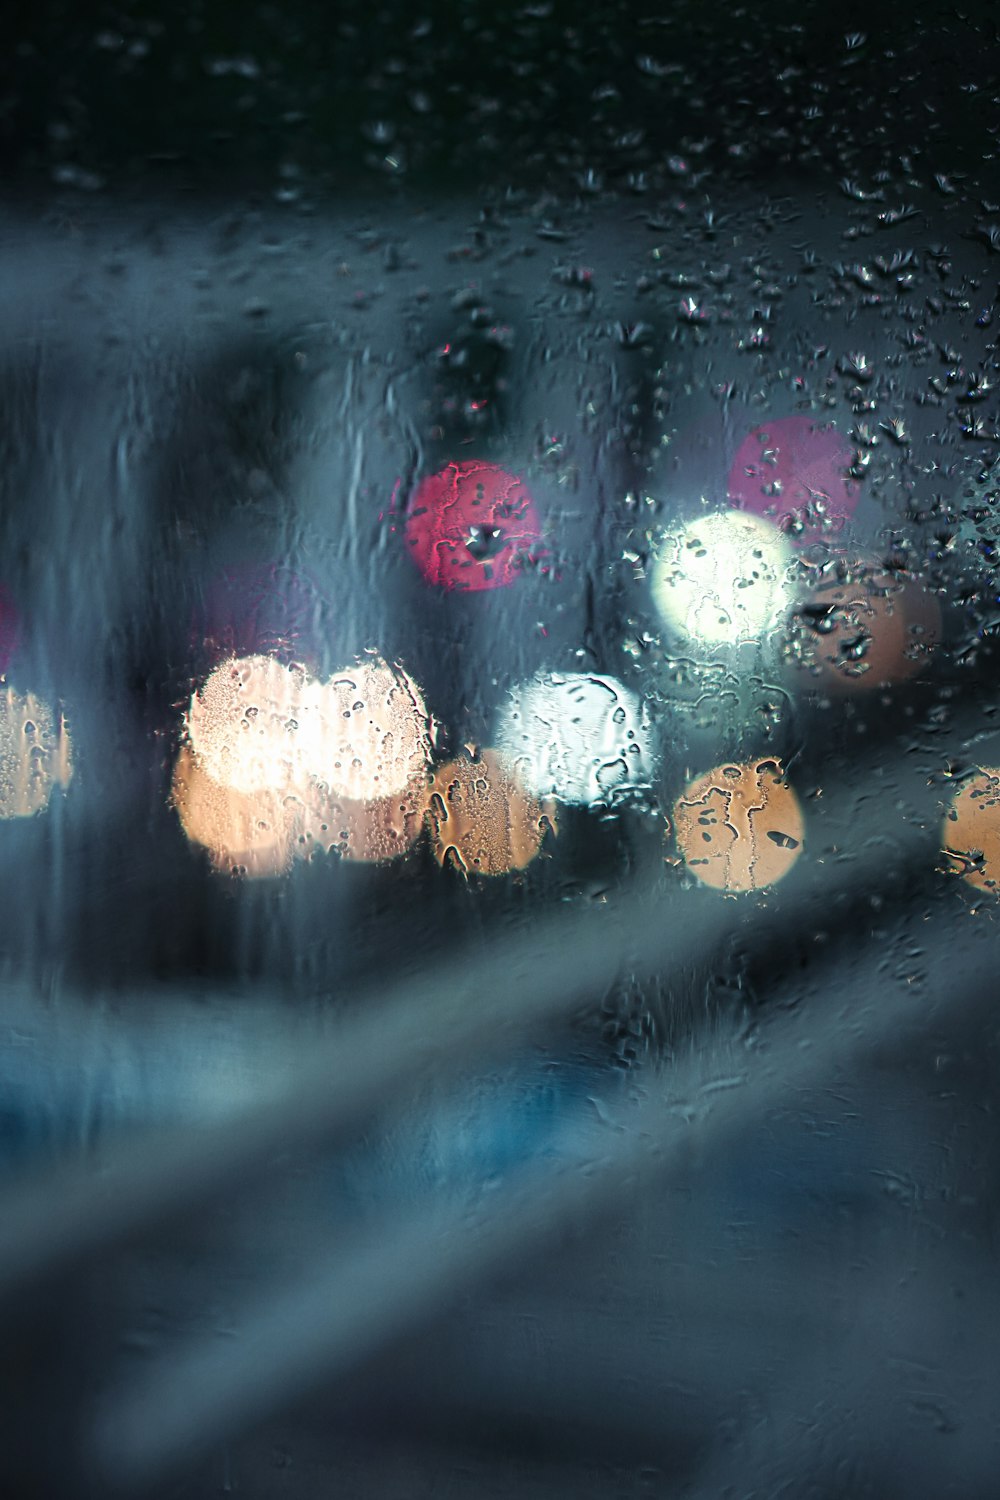 Una vista de una calle de la ciudad a través de una ventana cubierta de lluvia